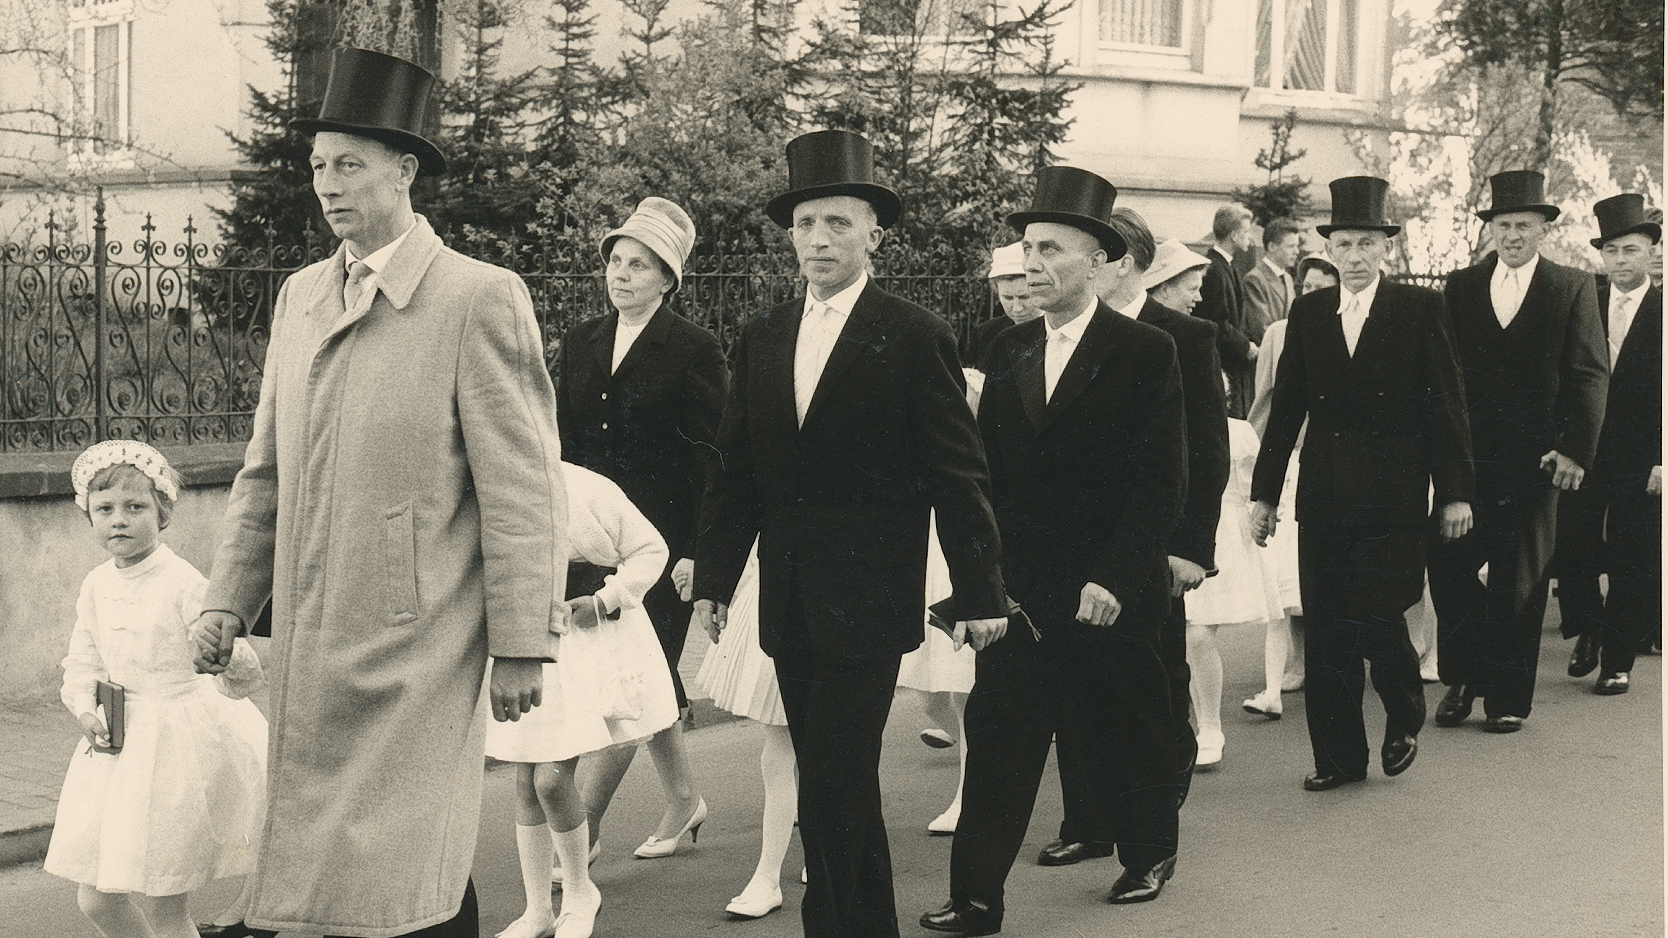 Diese Kopfbedeckung gehörte dazu: Bei der Erstkommunion 1961 in Lohne trugen die Väter Zylinderhüte.  Foto Stadtmedienarchiv